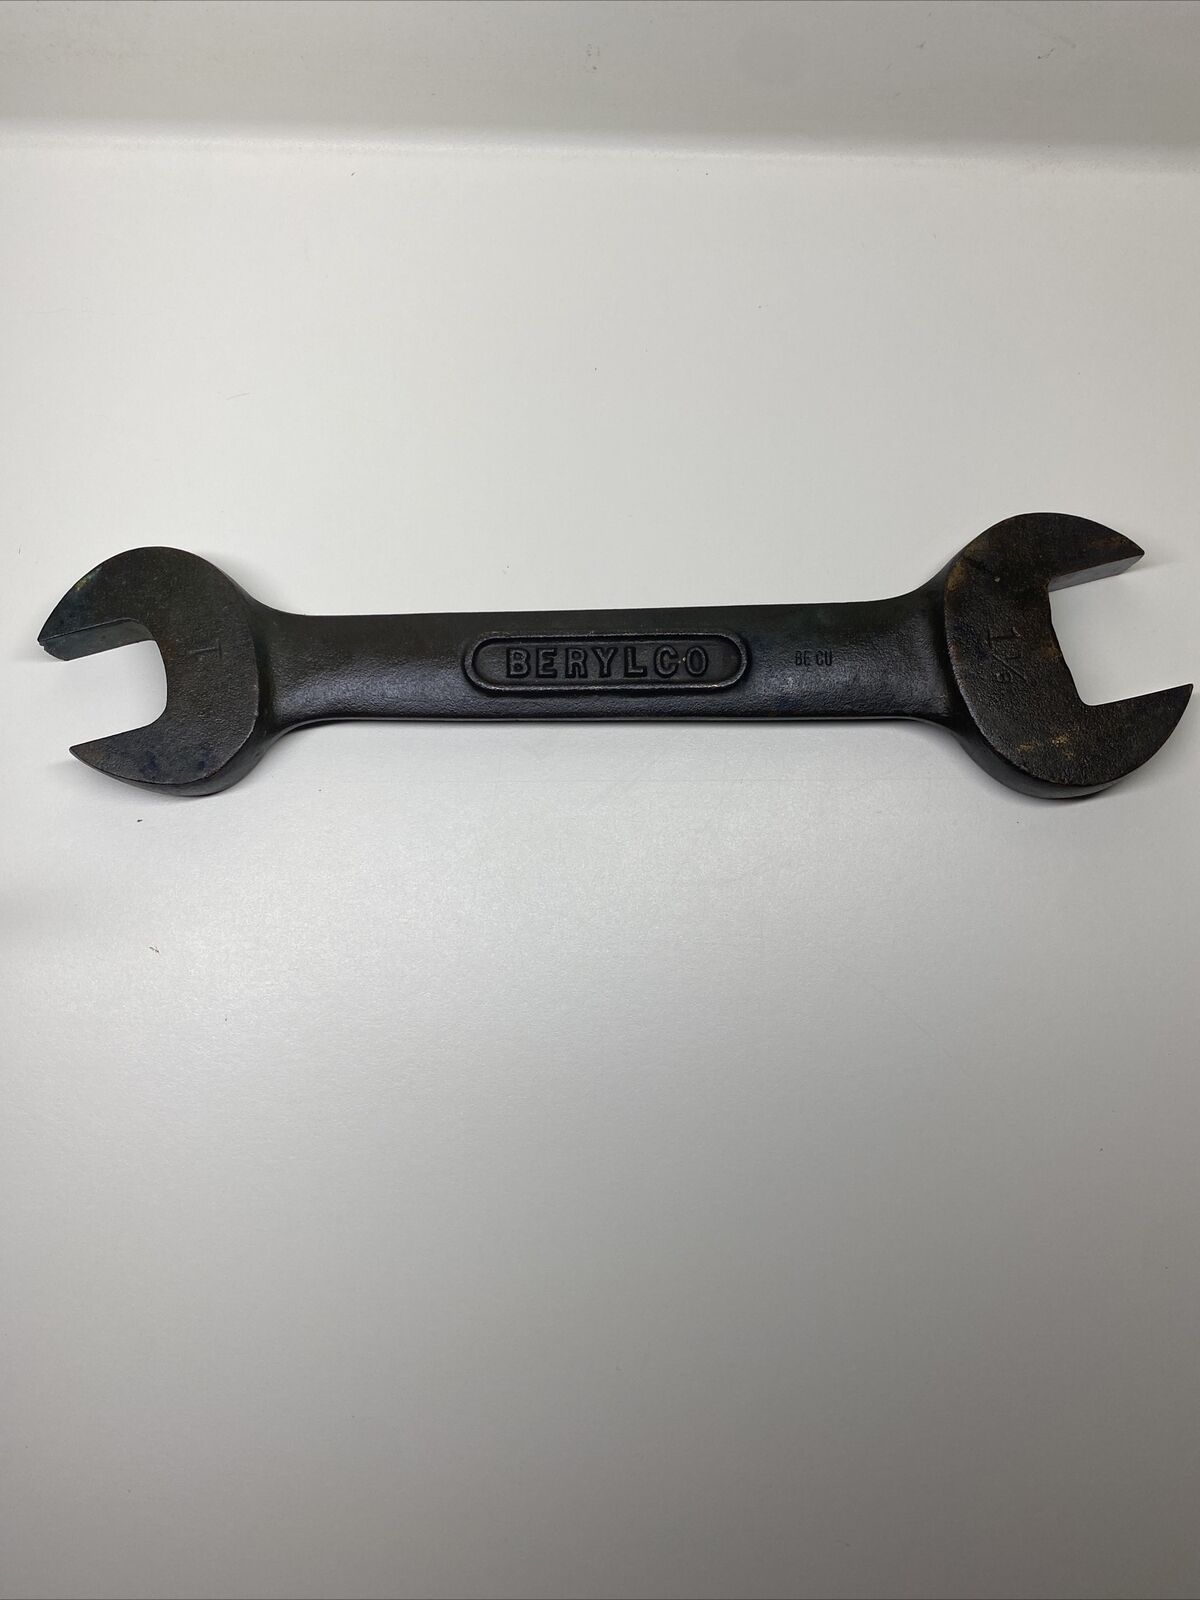 Vintage BERYLCO W106 Non Spark Beryllium Open End Wrench Size 1” & 1 1/8”